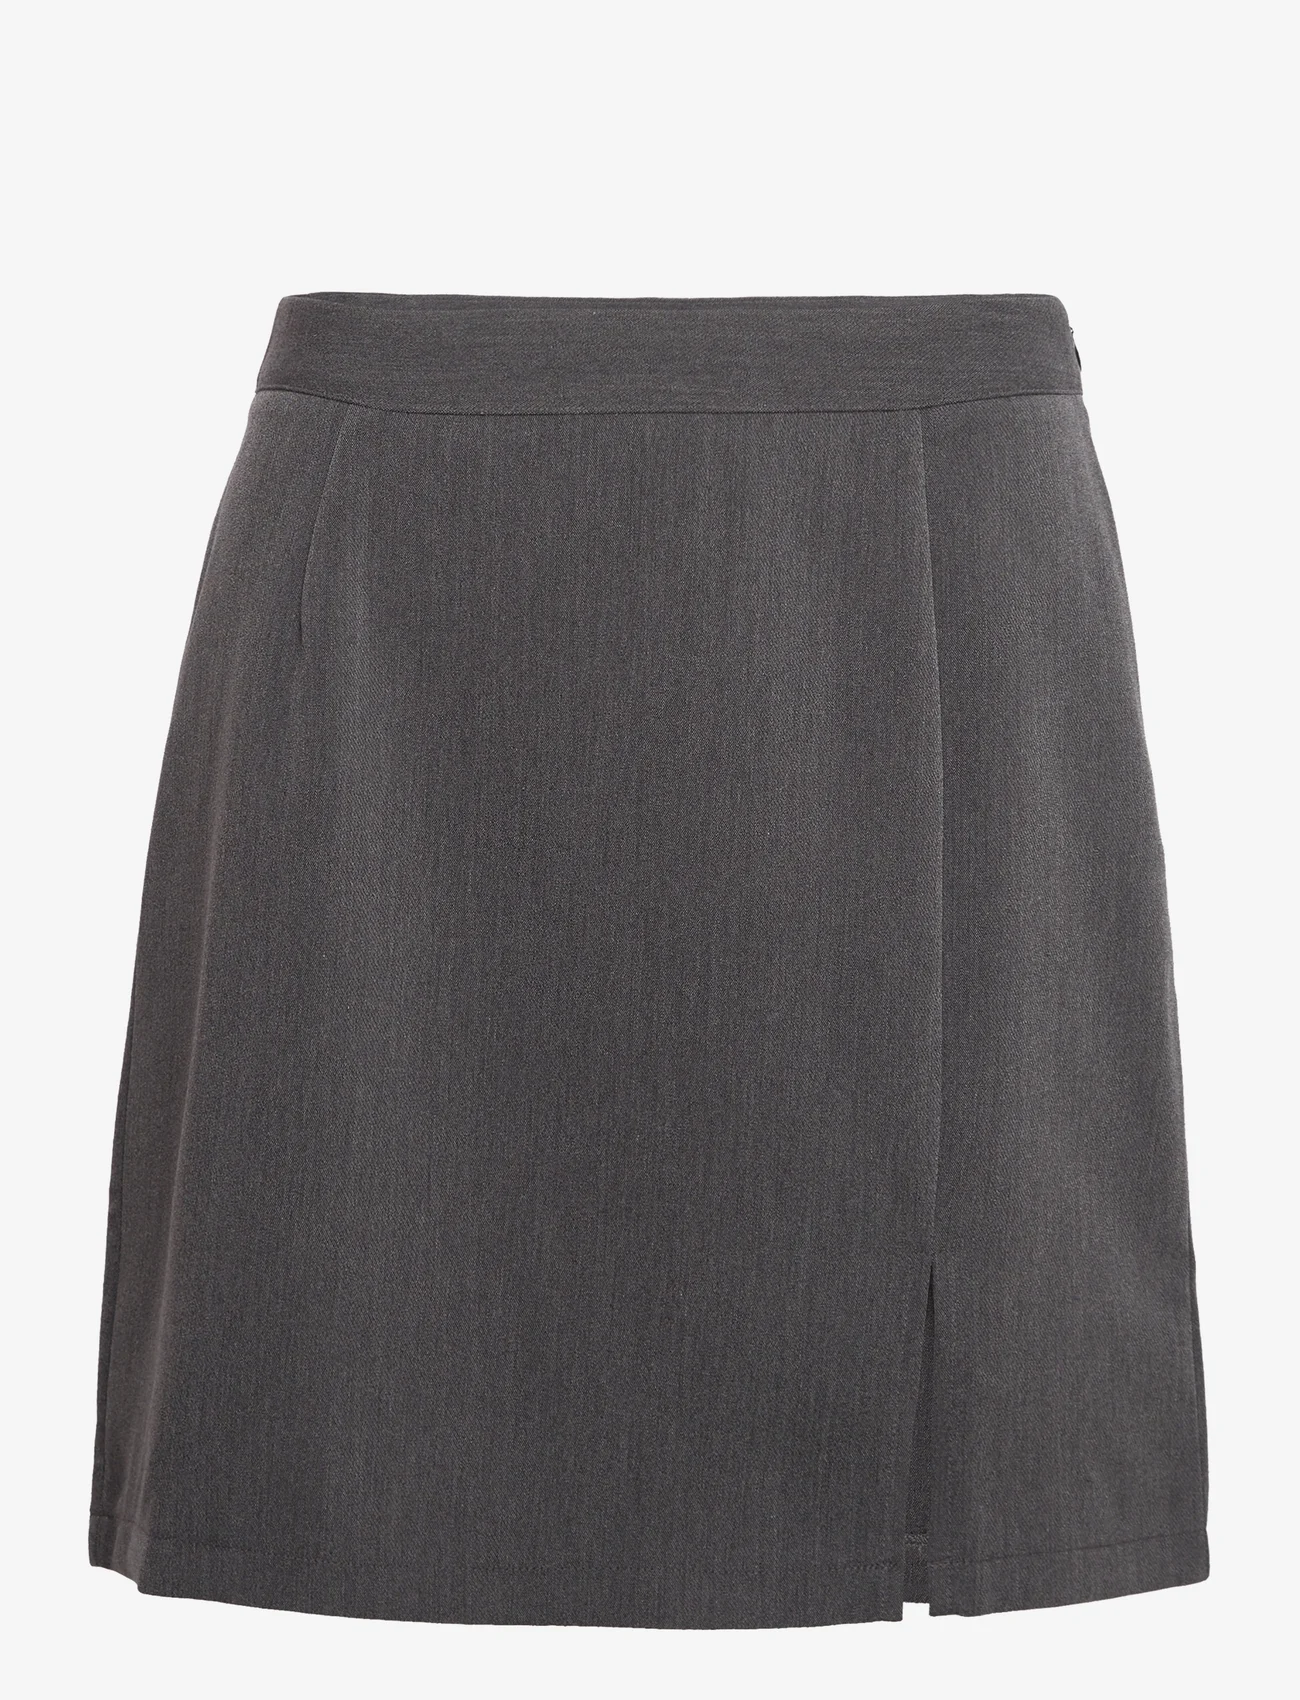 A-View - Annali skirt-1 - kurze röcke - grey - 0